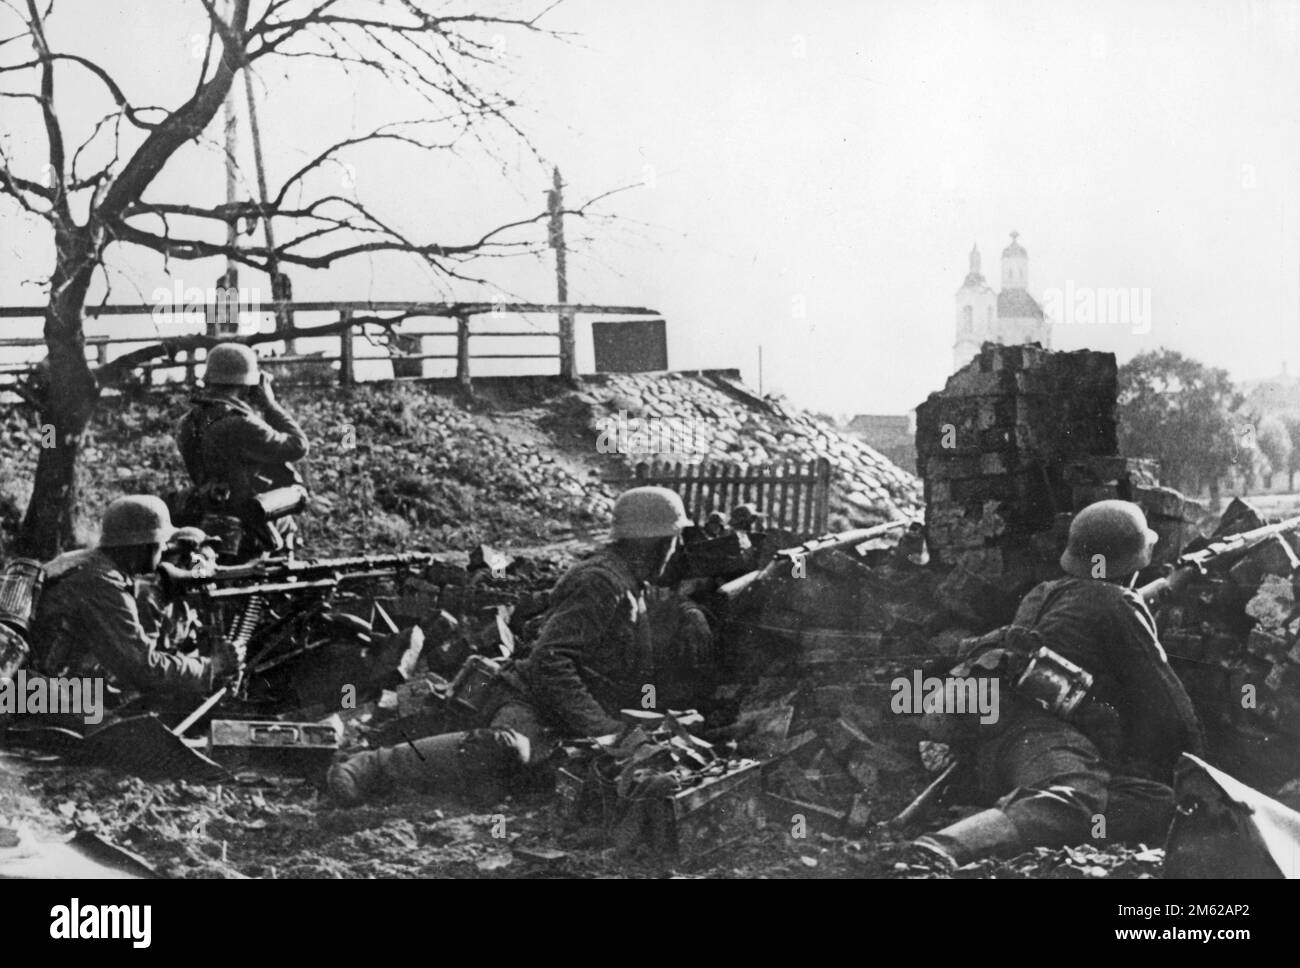 Deutsche Infanterieposition mit MG-34-Maschinengewehr in der Nähe der Kirche während der Schlacht um die Stadt Velikie Luki in Nordrussland während der Operation Barbarossa, der nazi-Invasion der Sowjetunion. Stockfoto